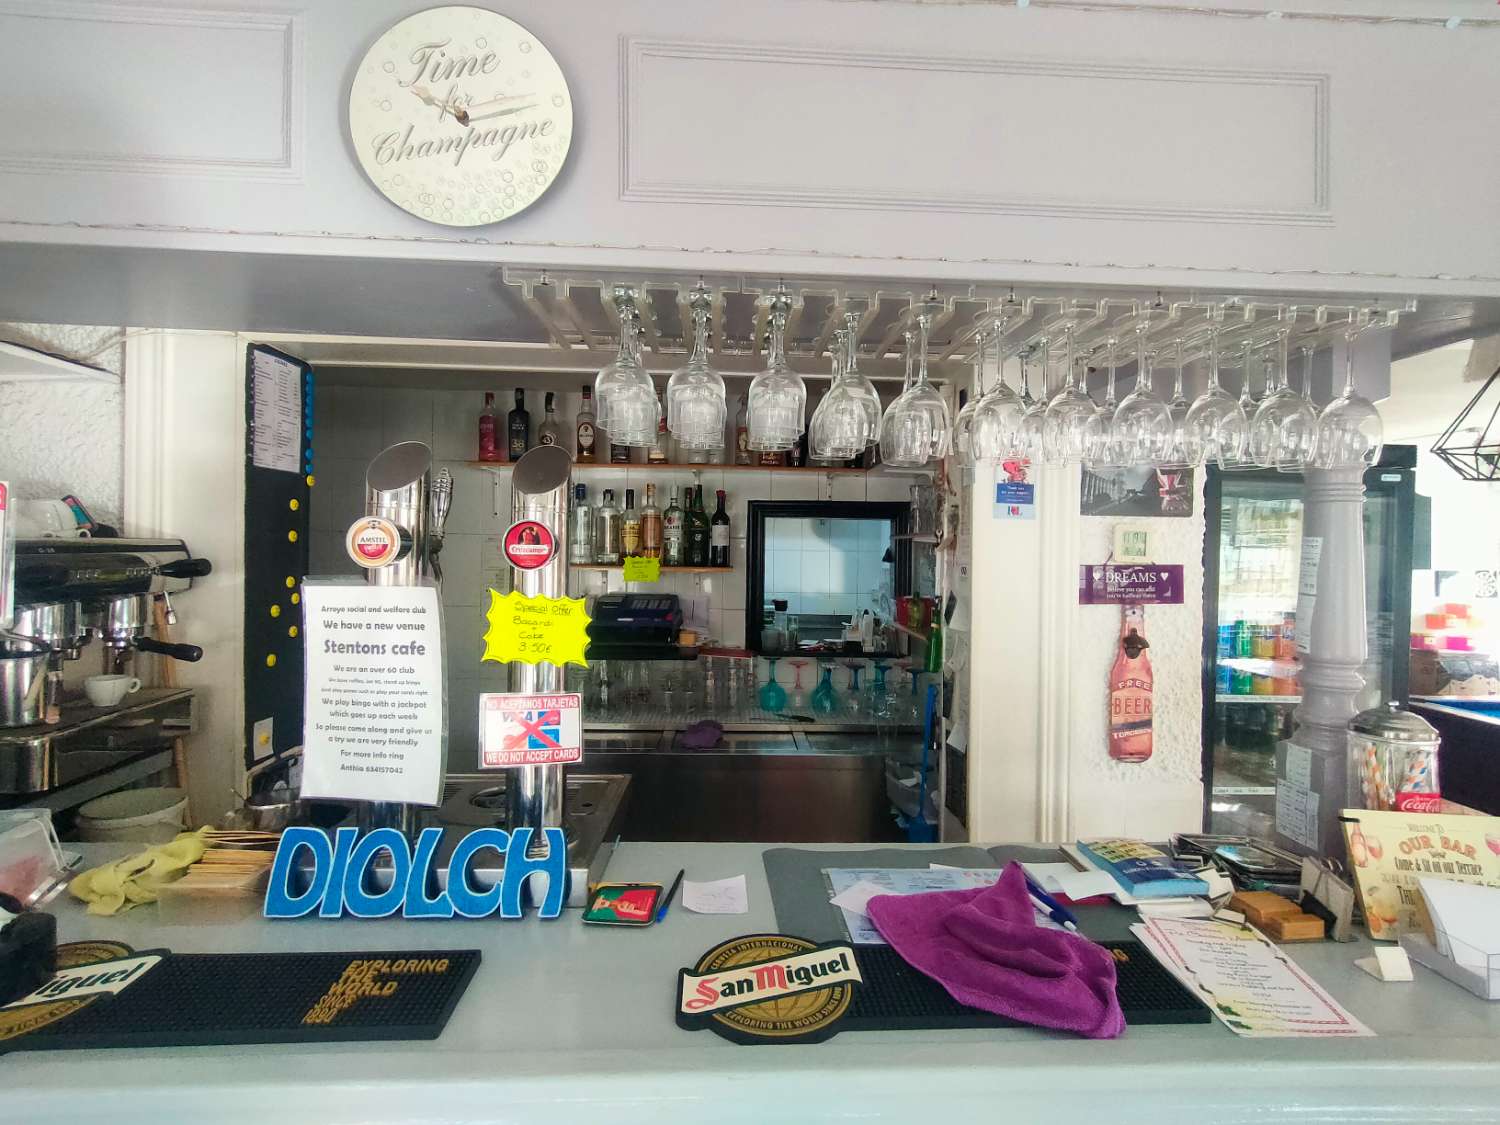 Traspaso Cafe Bar en Arroyo de la Miel - Benalmadena - con VIVIENDA / STUDIO INCLUIDO